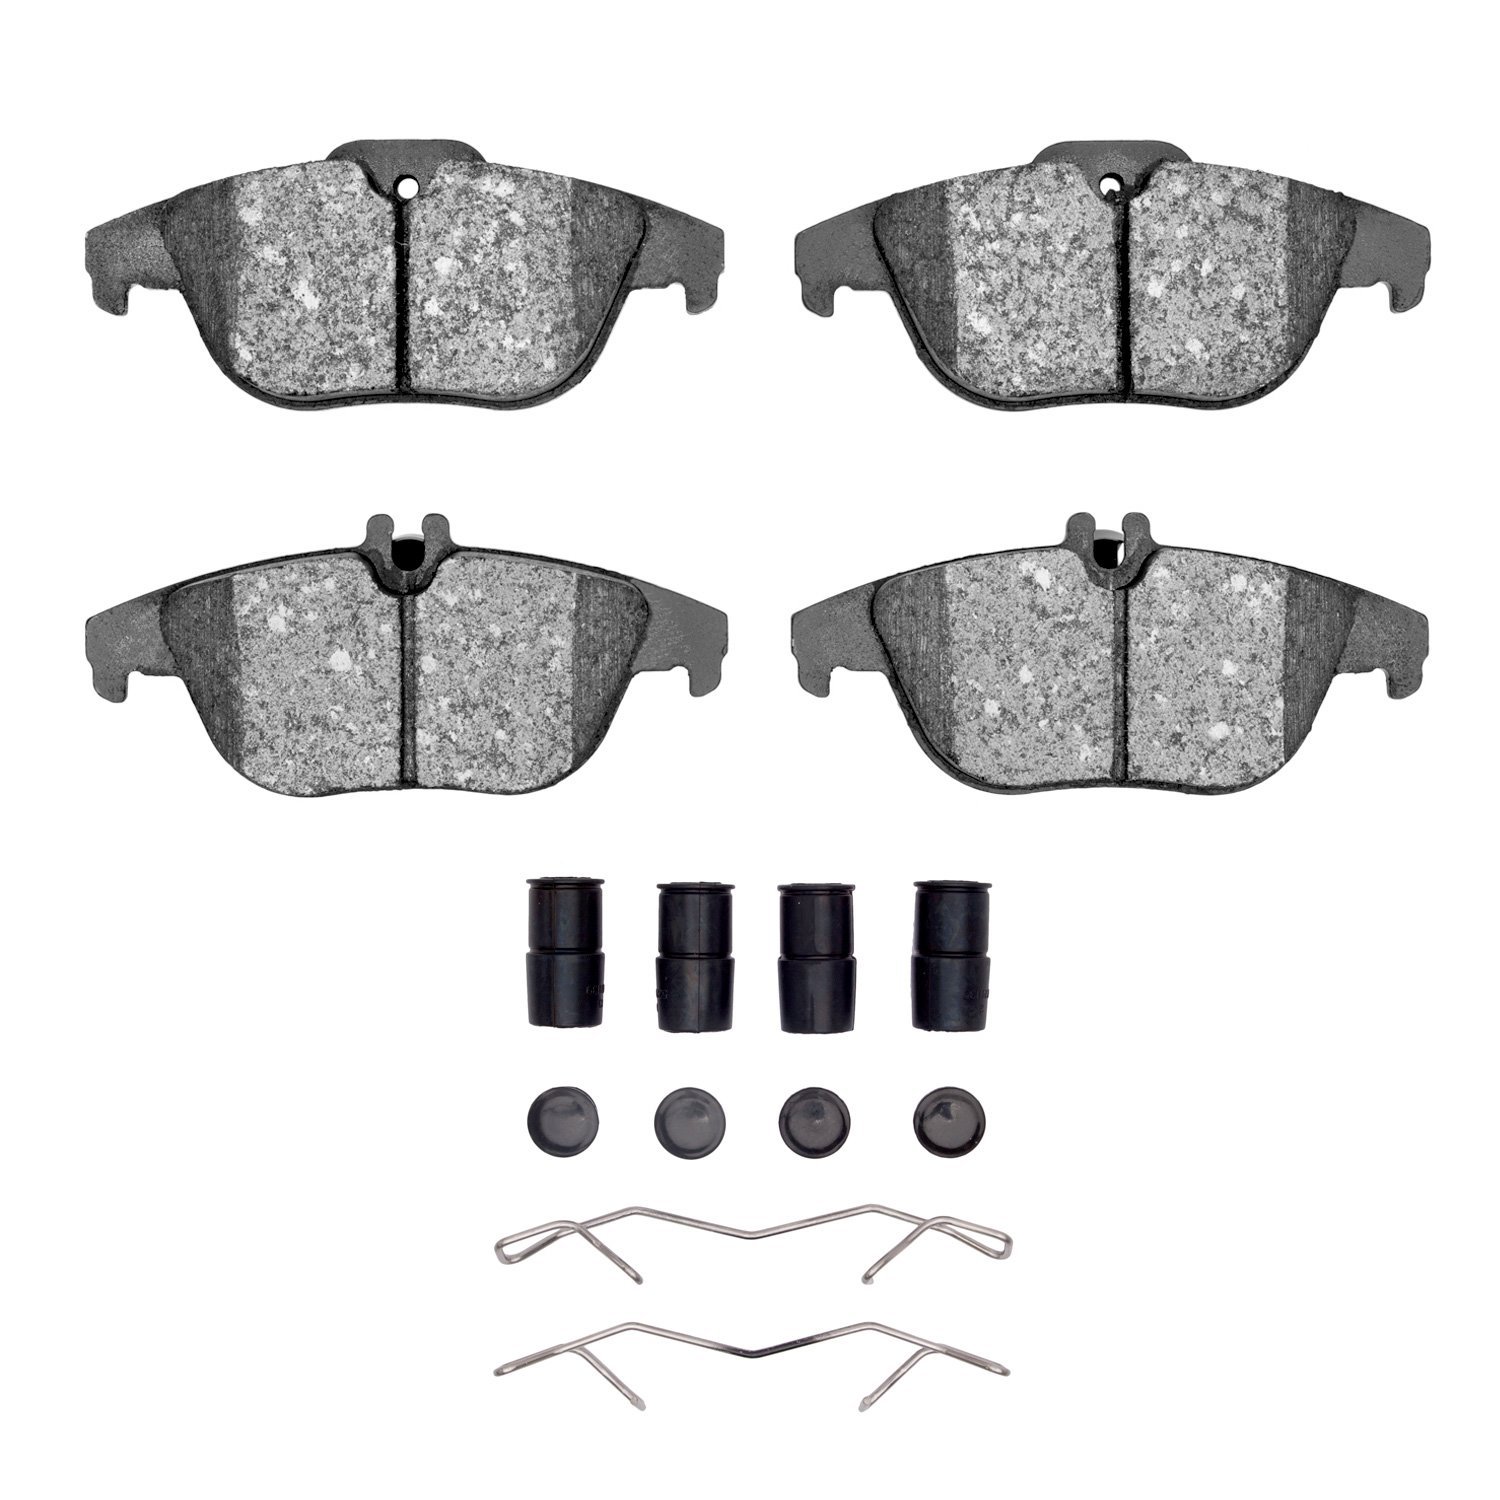 1310-1341-01 3000-Series Ceramic Brake Pads & Hardware Kit, 2008-2017 Mercedes-Benz, Position: Rear